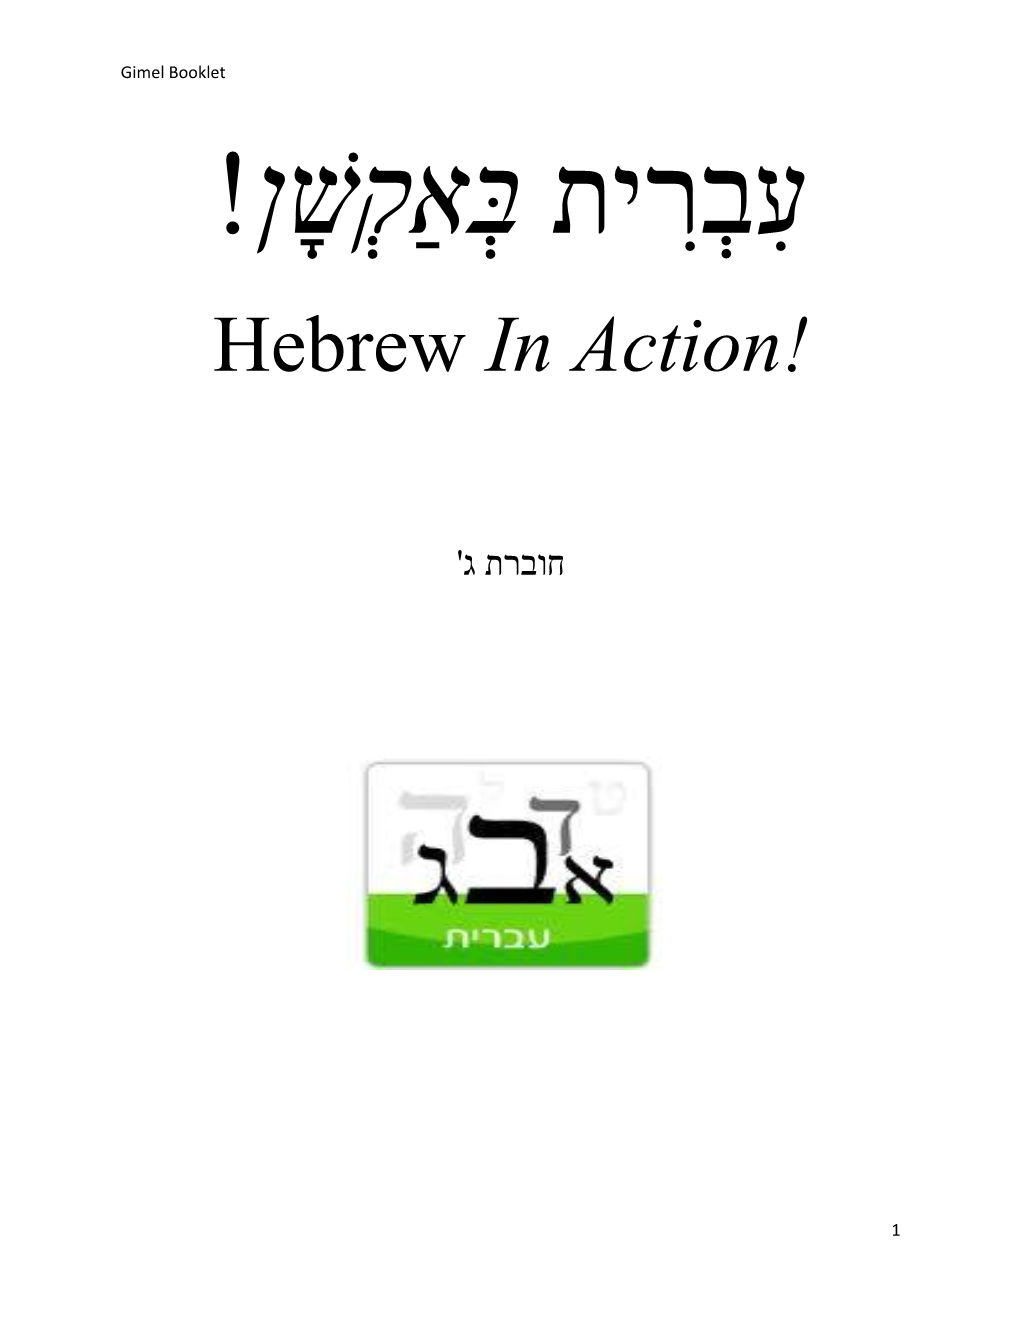 Hebrew in Action!